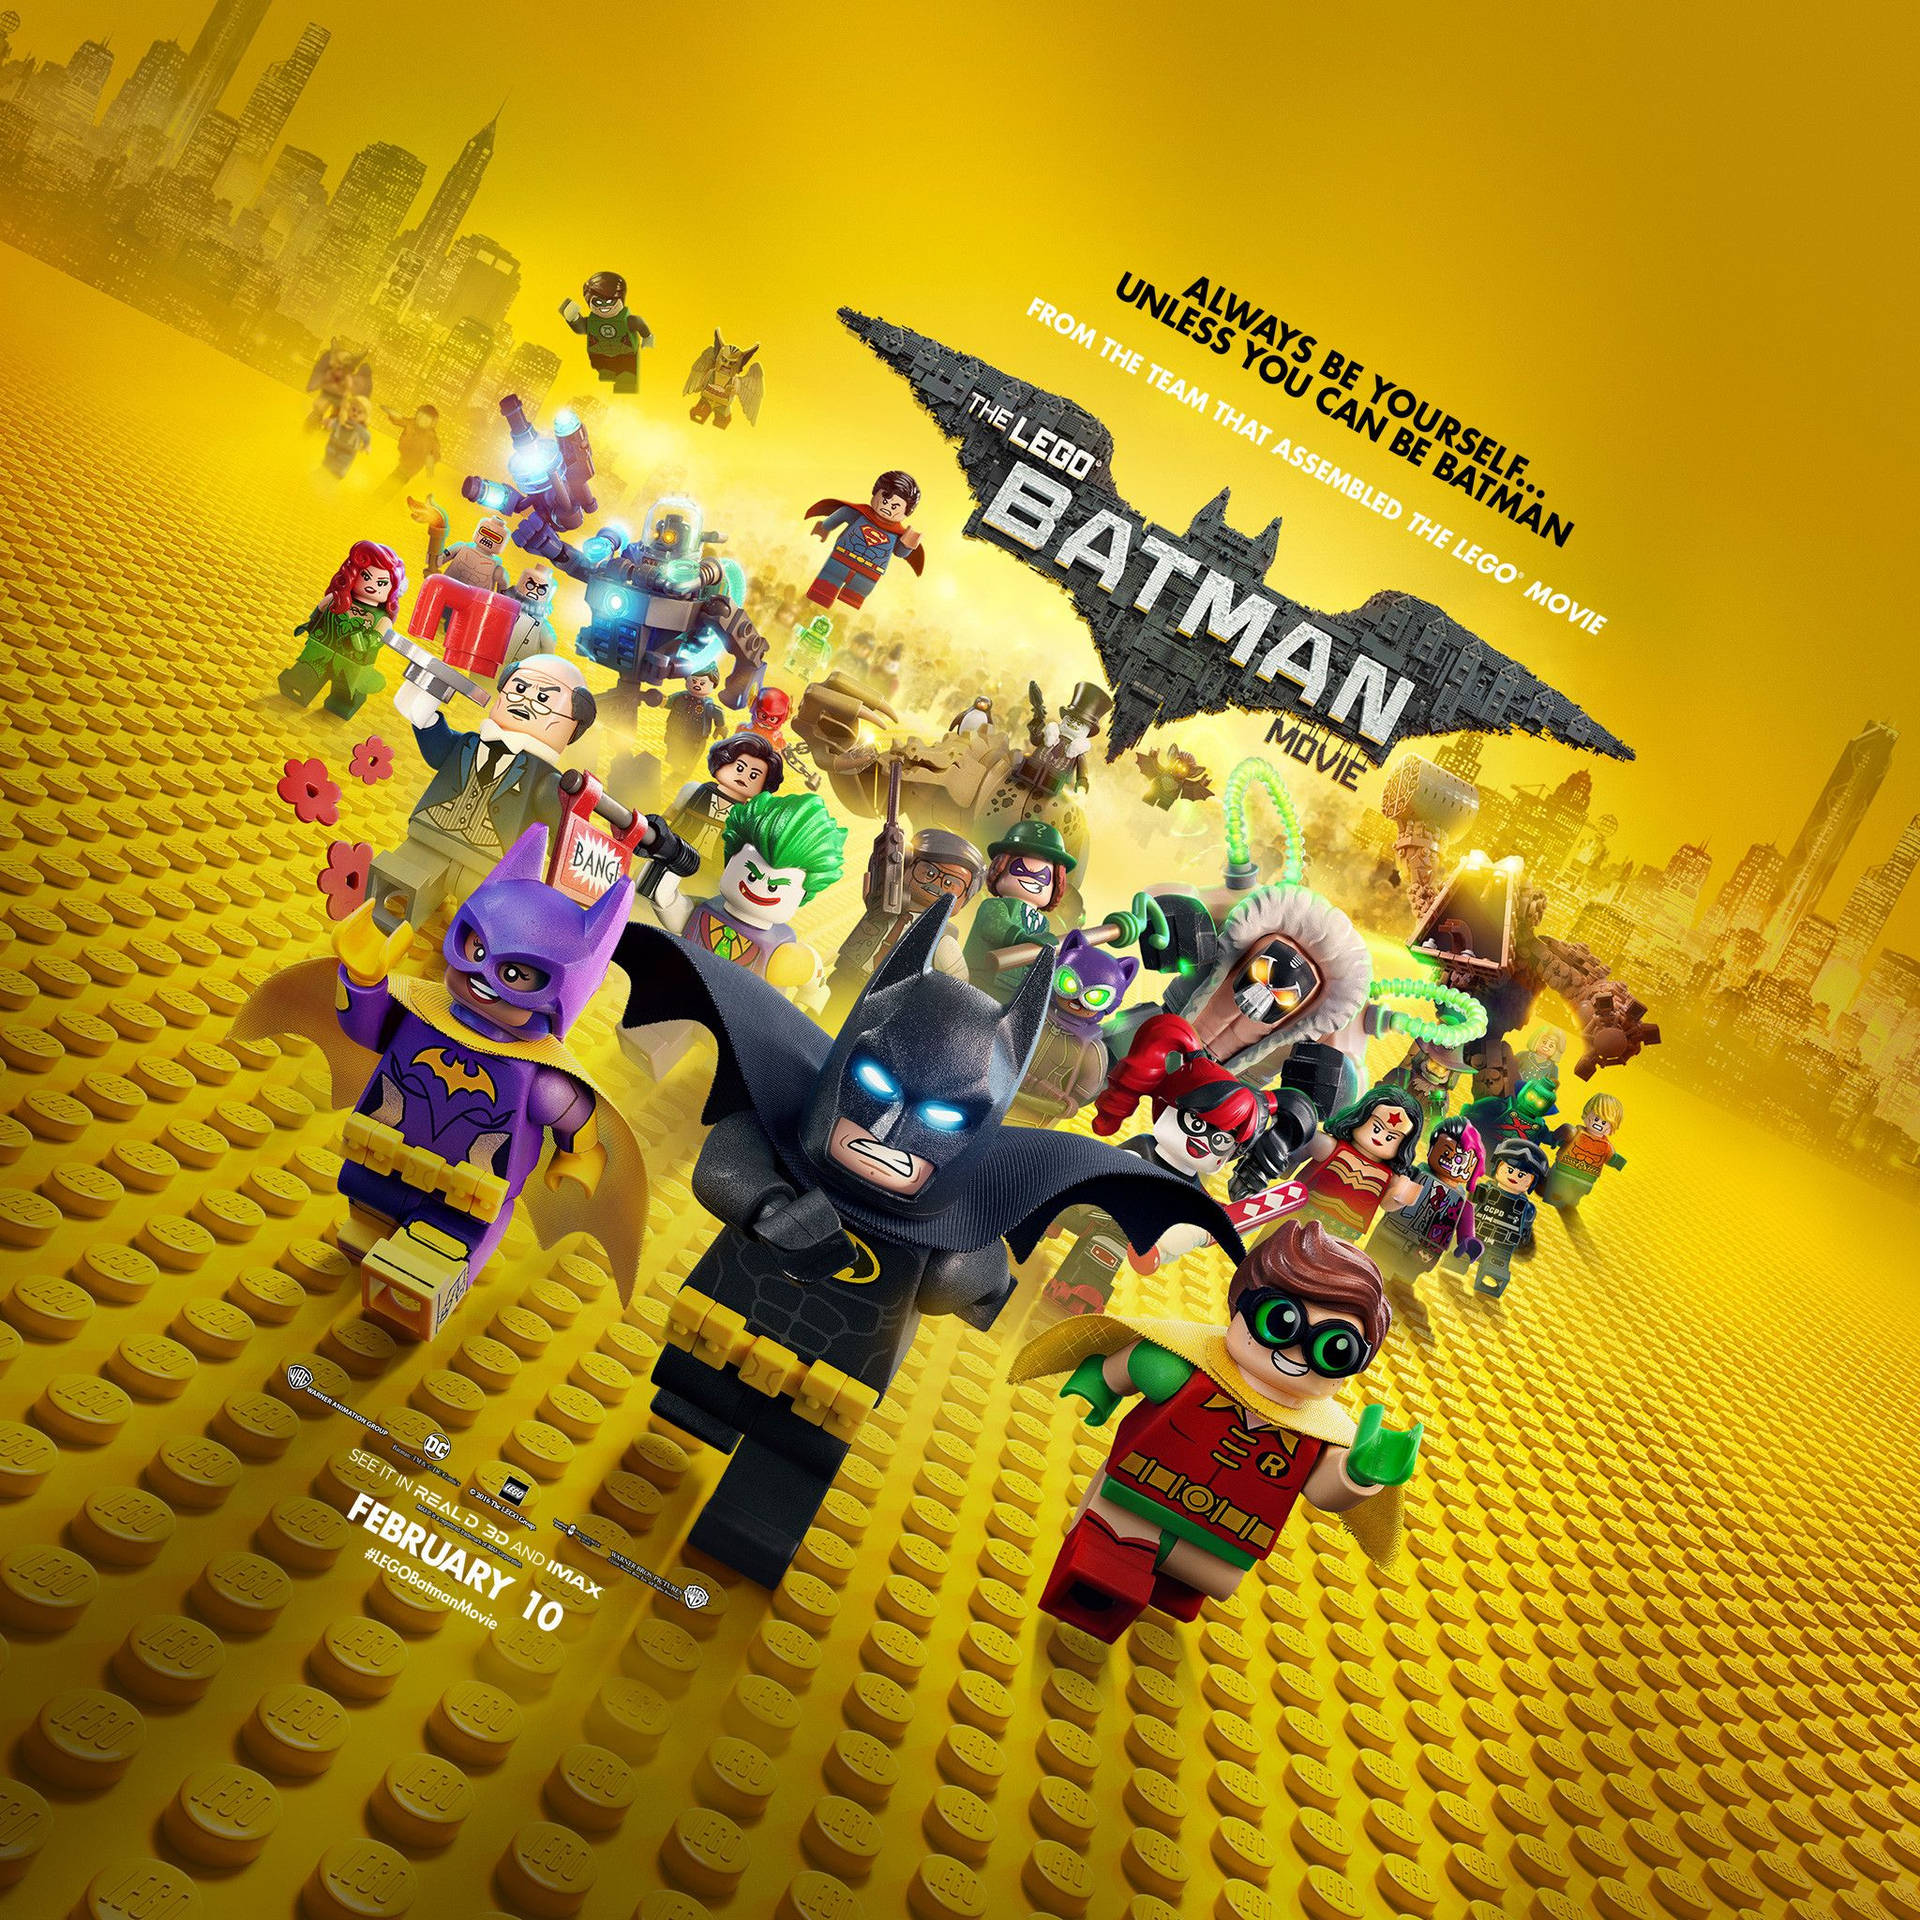 Ilposter Promozionale Del Film Lego Batman Sfondo